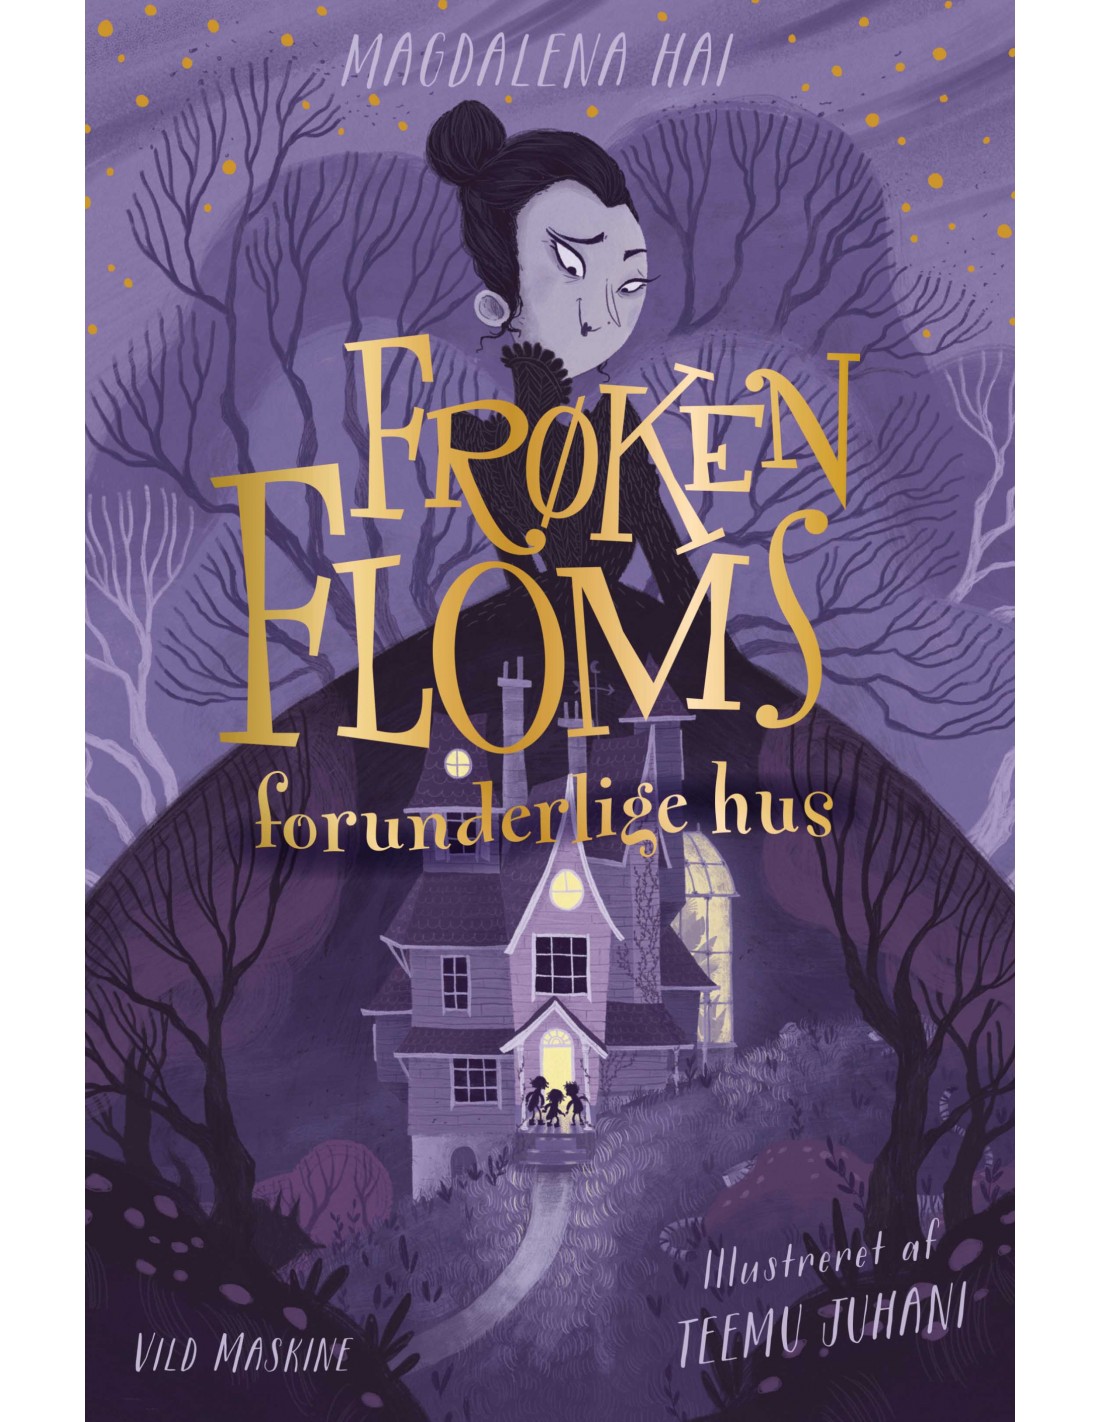 "Frøken Floms forunderlige hus" af Magdalena Hai, oversat af René Semberlund Jensen.